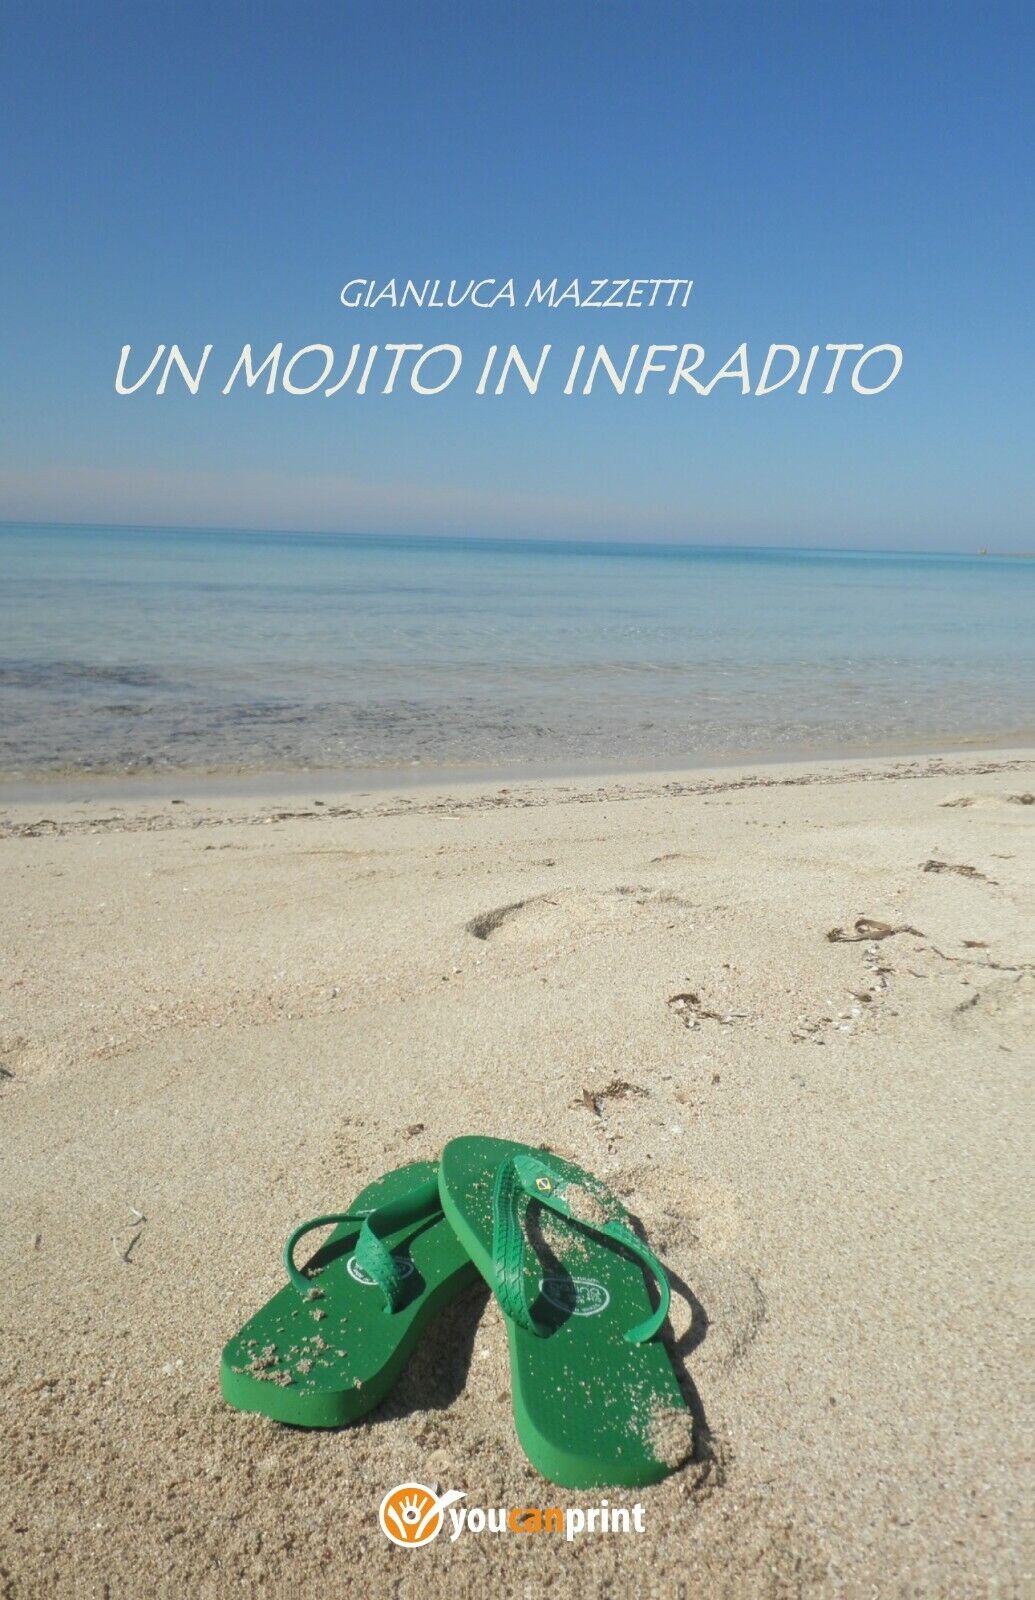 Un mojito in infradito di Gianluca Mazzetti, 2020, Youcanprint